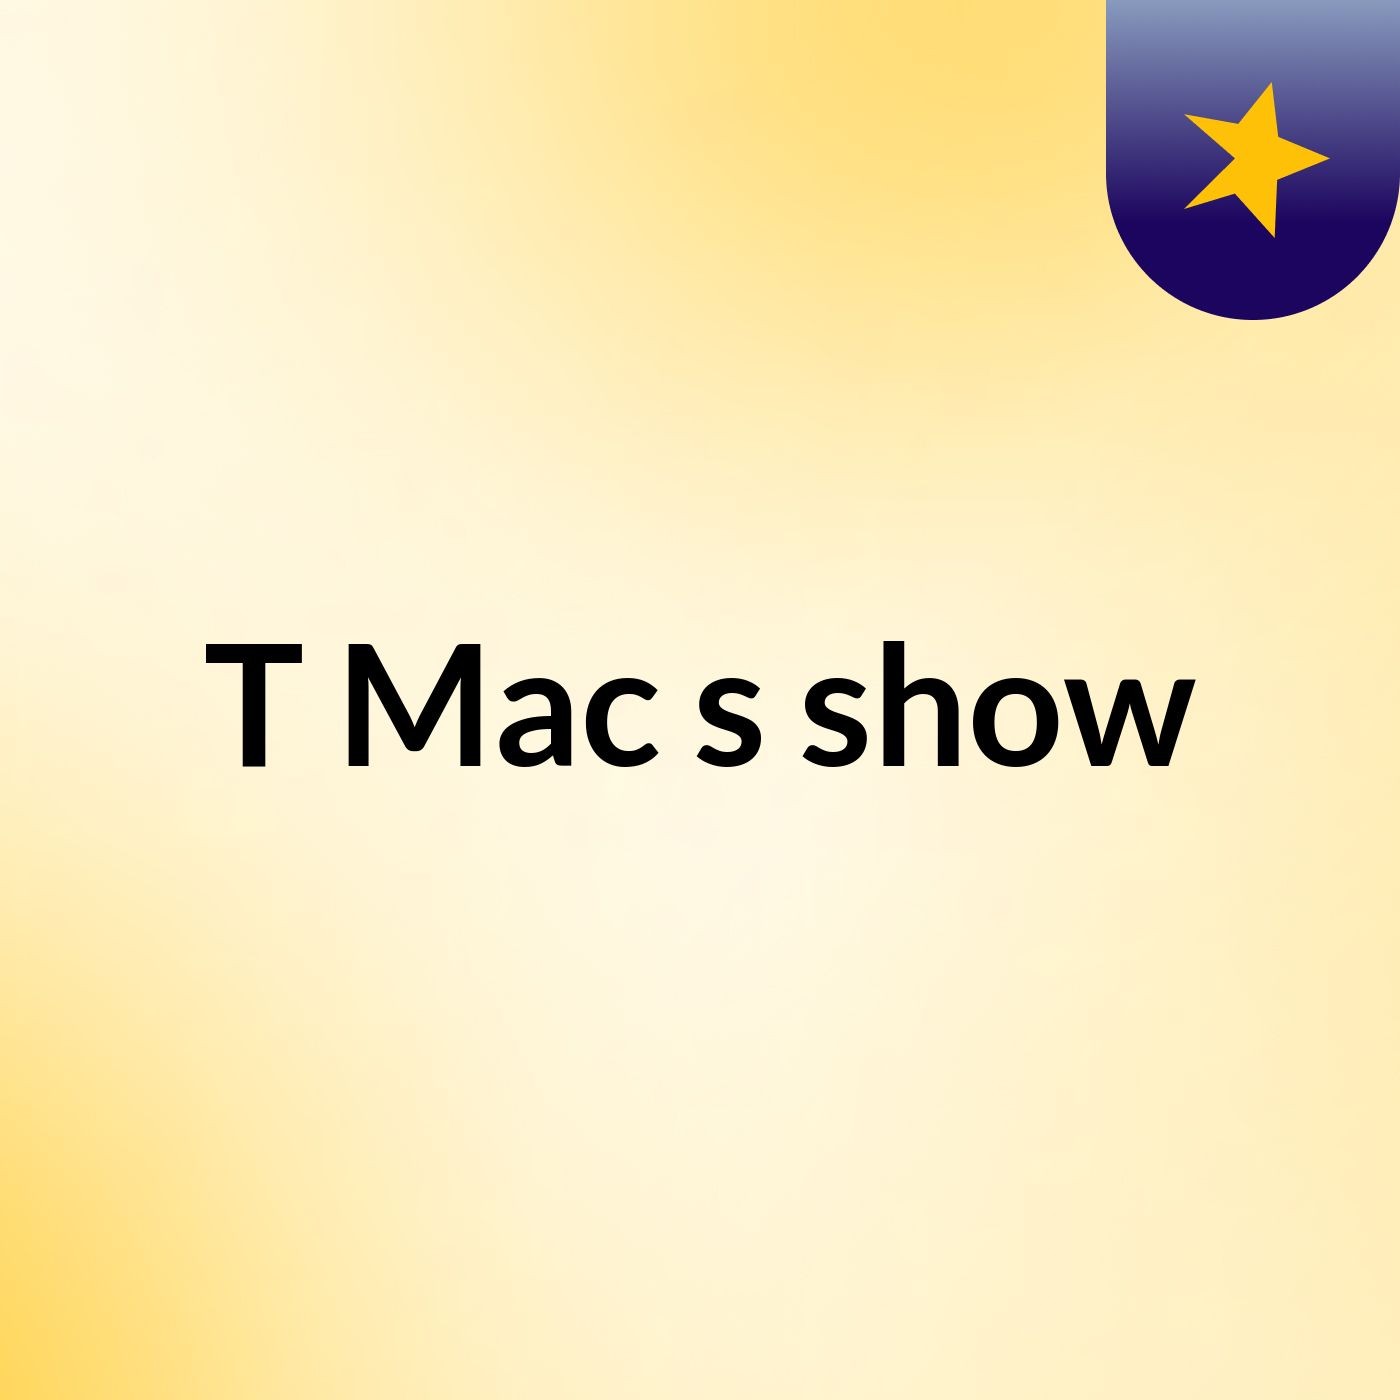 T Mac's show